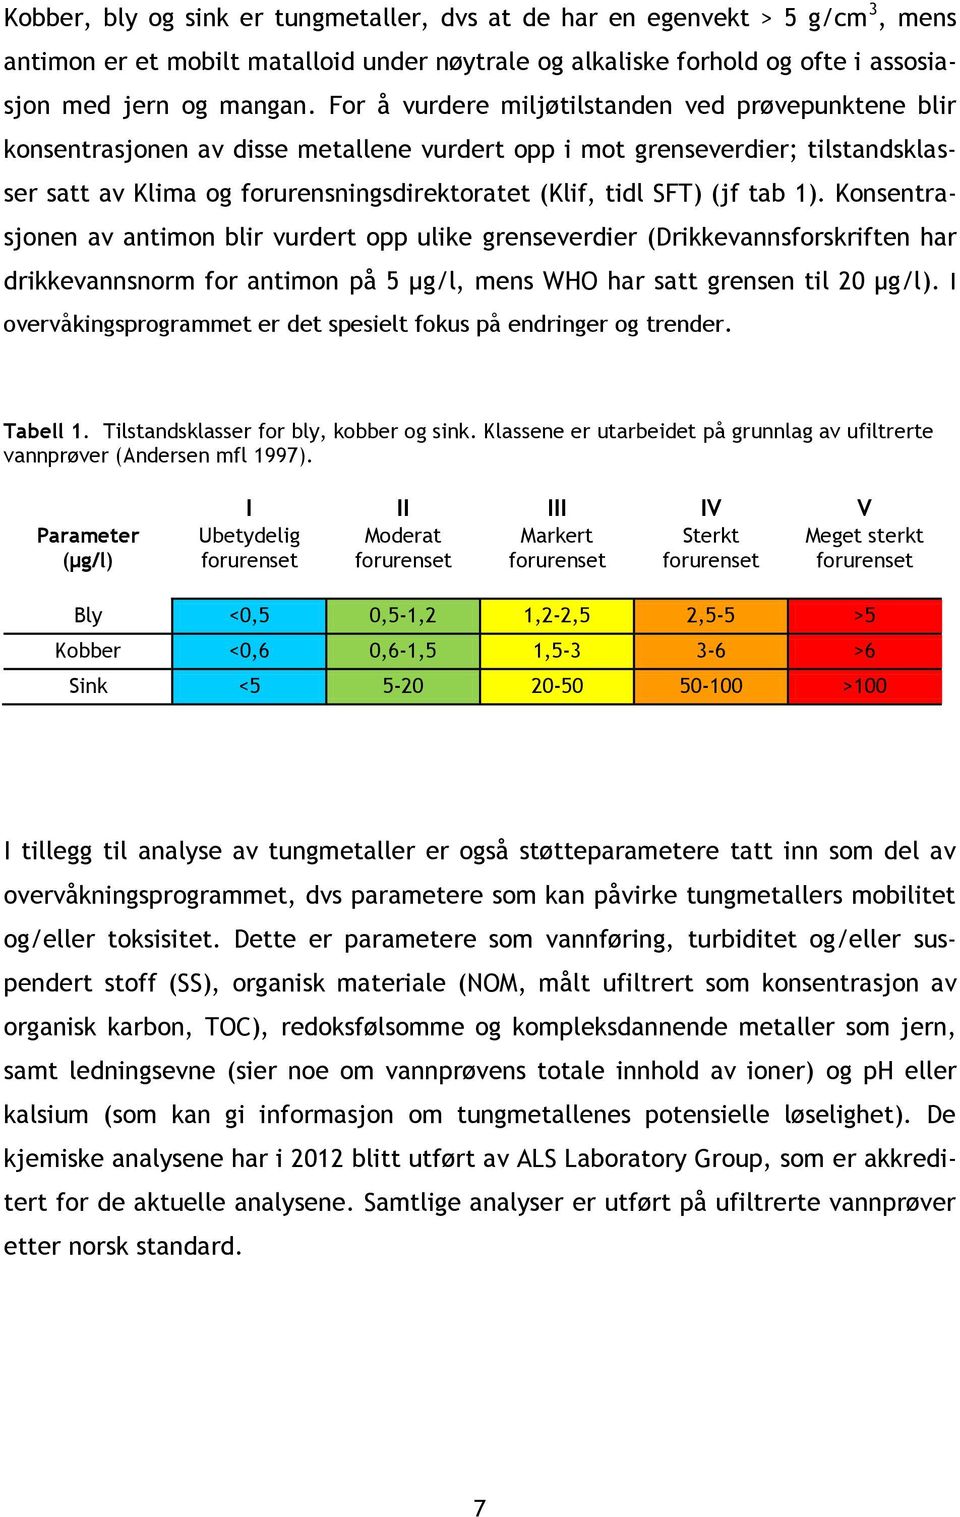 (jf tab 1). Konsentrasjonen av antimon blir vurdert opp ulike grenseverdier (Drikkevannsforskriften har drikkevannsnorm for antimon på 5 µg/l, mens WHO har satt grensen til 20 µg/l).